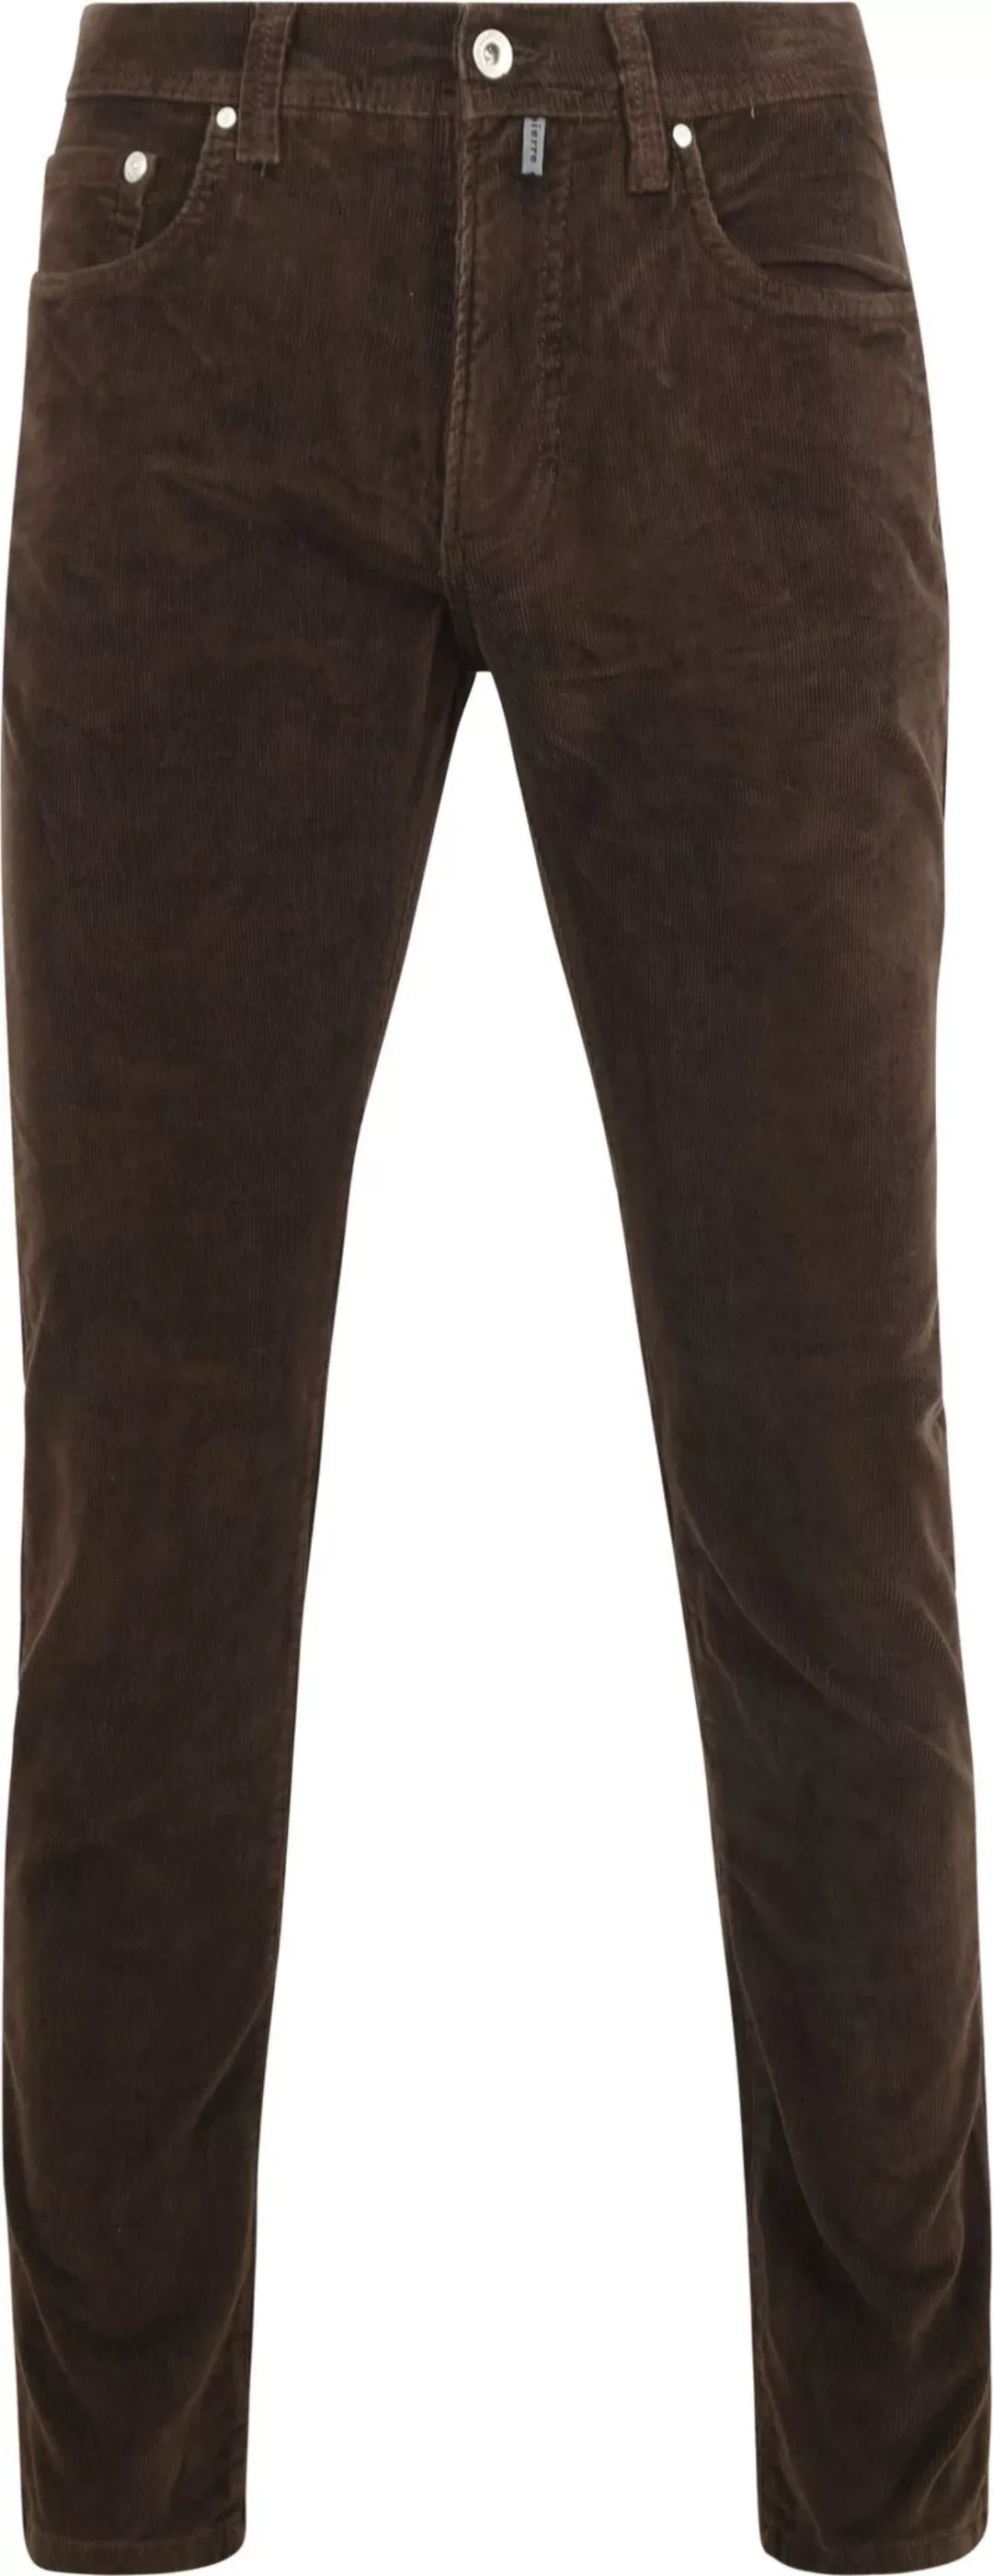 Pierre Cardin Trousers Lyon Future Flex Corduroy Braun - Größe W 32 - L 32 günstig online kaufen